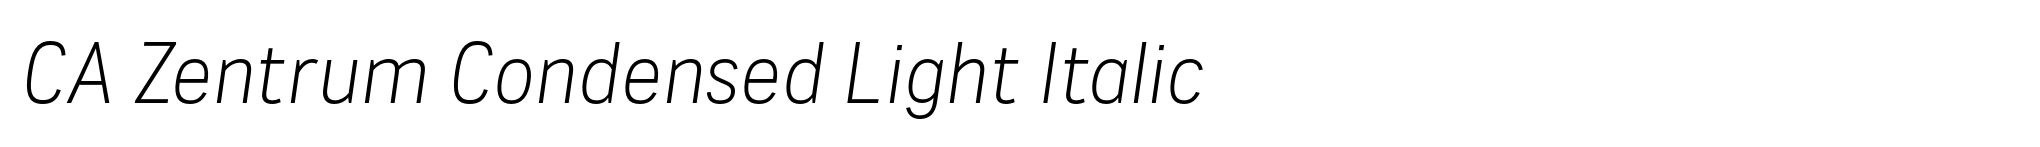 CA Zentrum Condensed Light Italic image